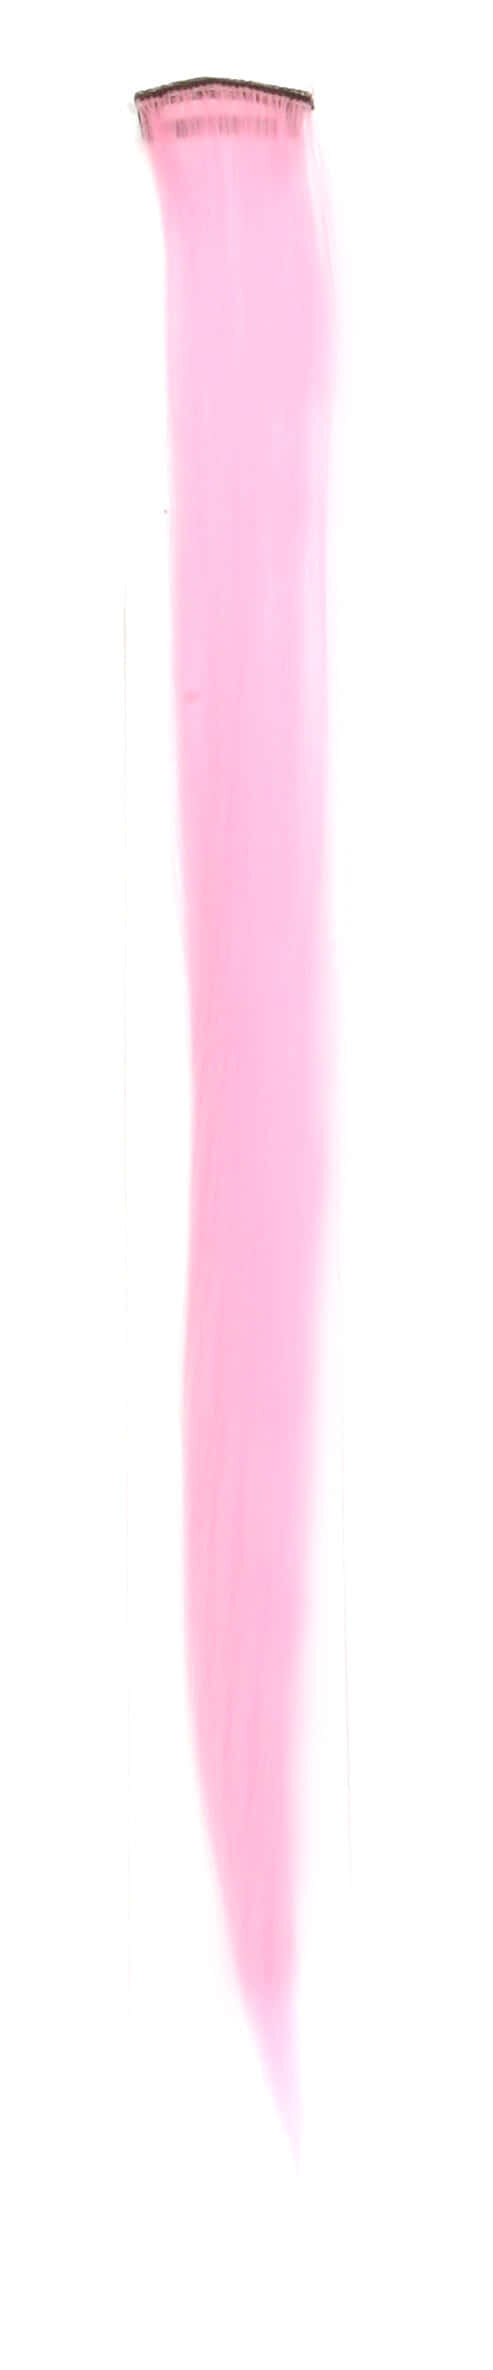 Hairshop Декоративная прядь на заколке синтетическая К 1 (Нежно-розовый)